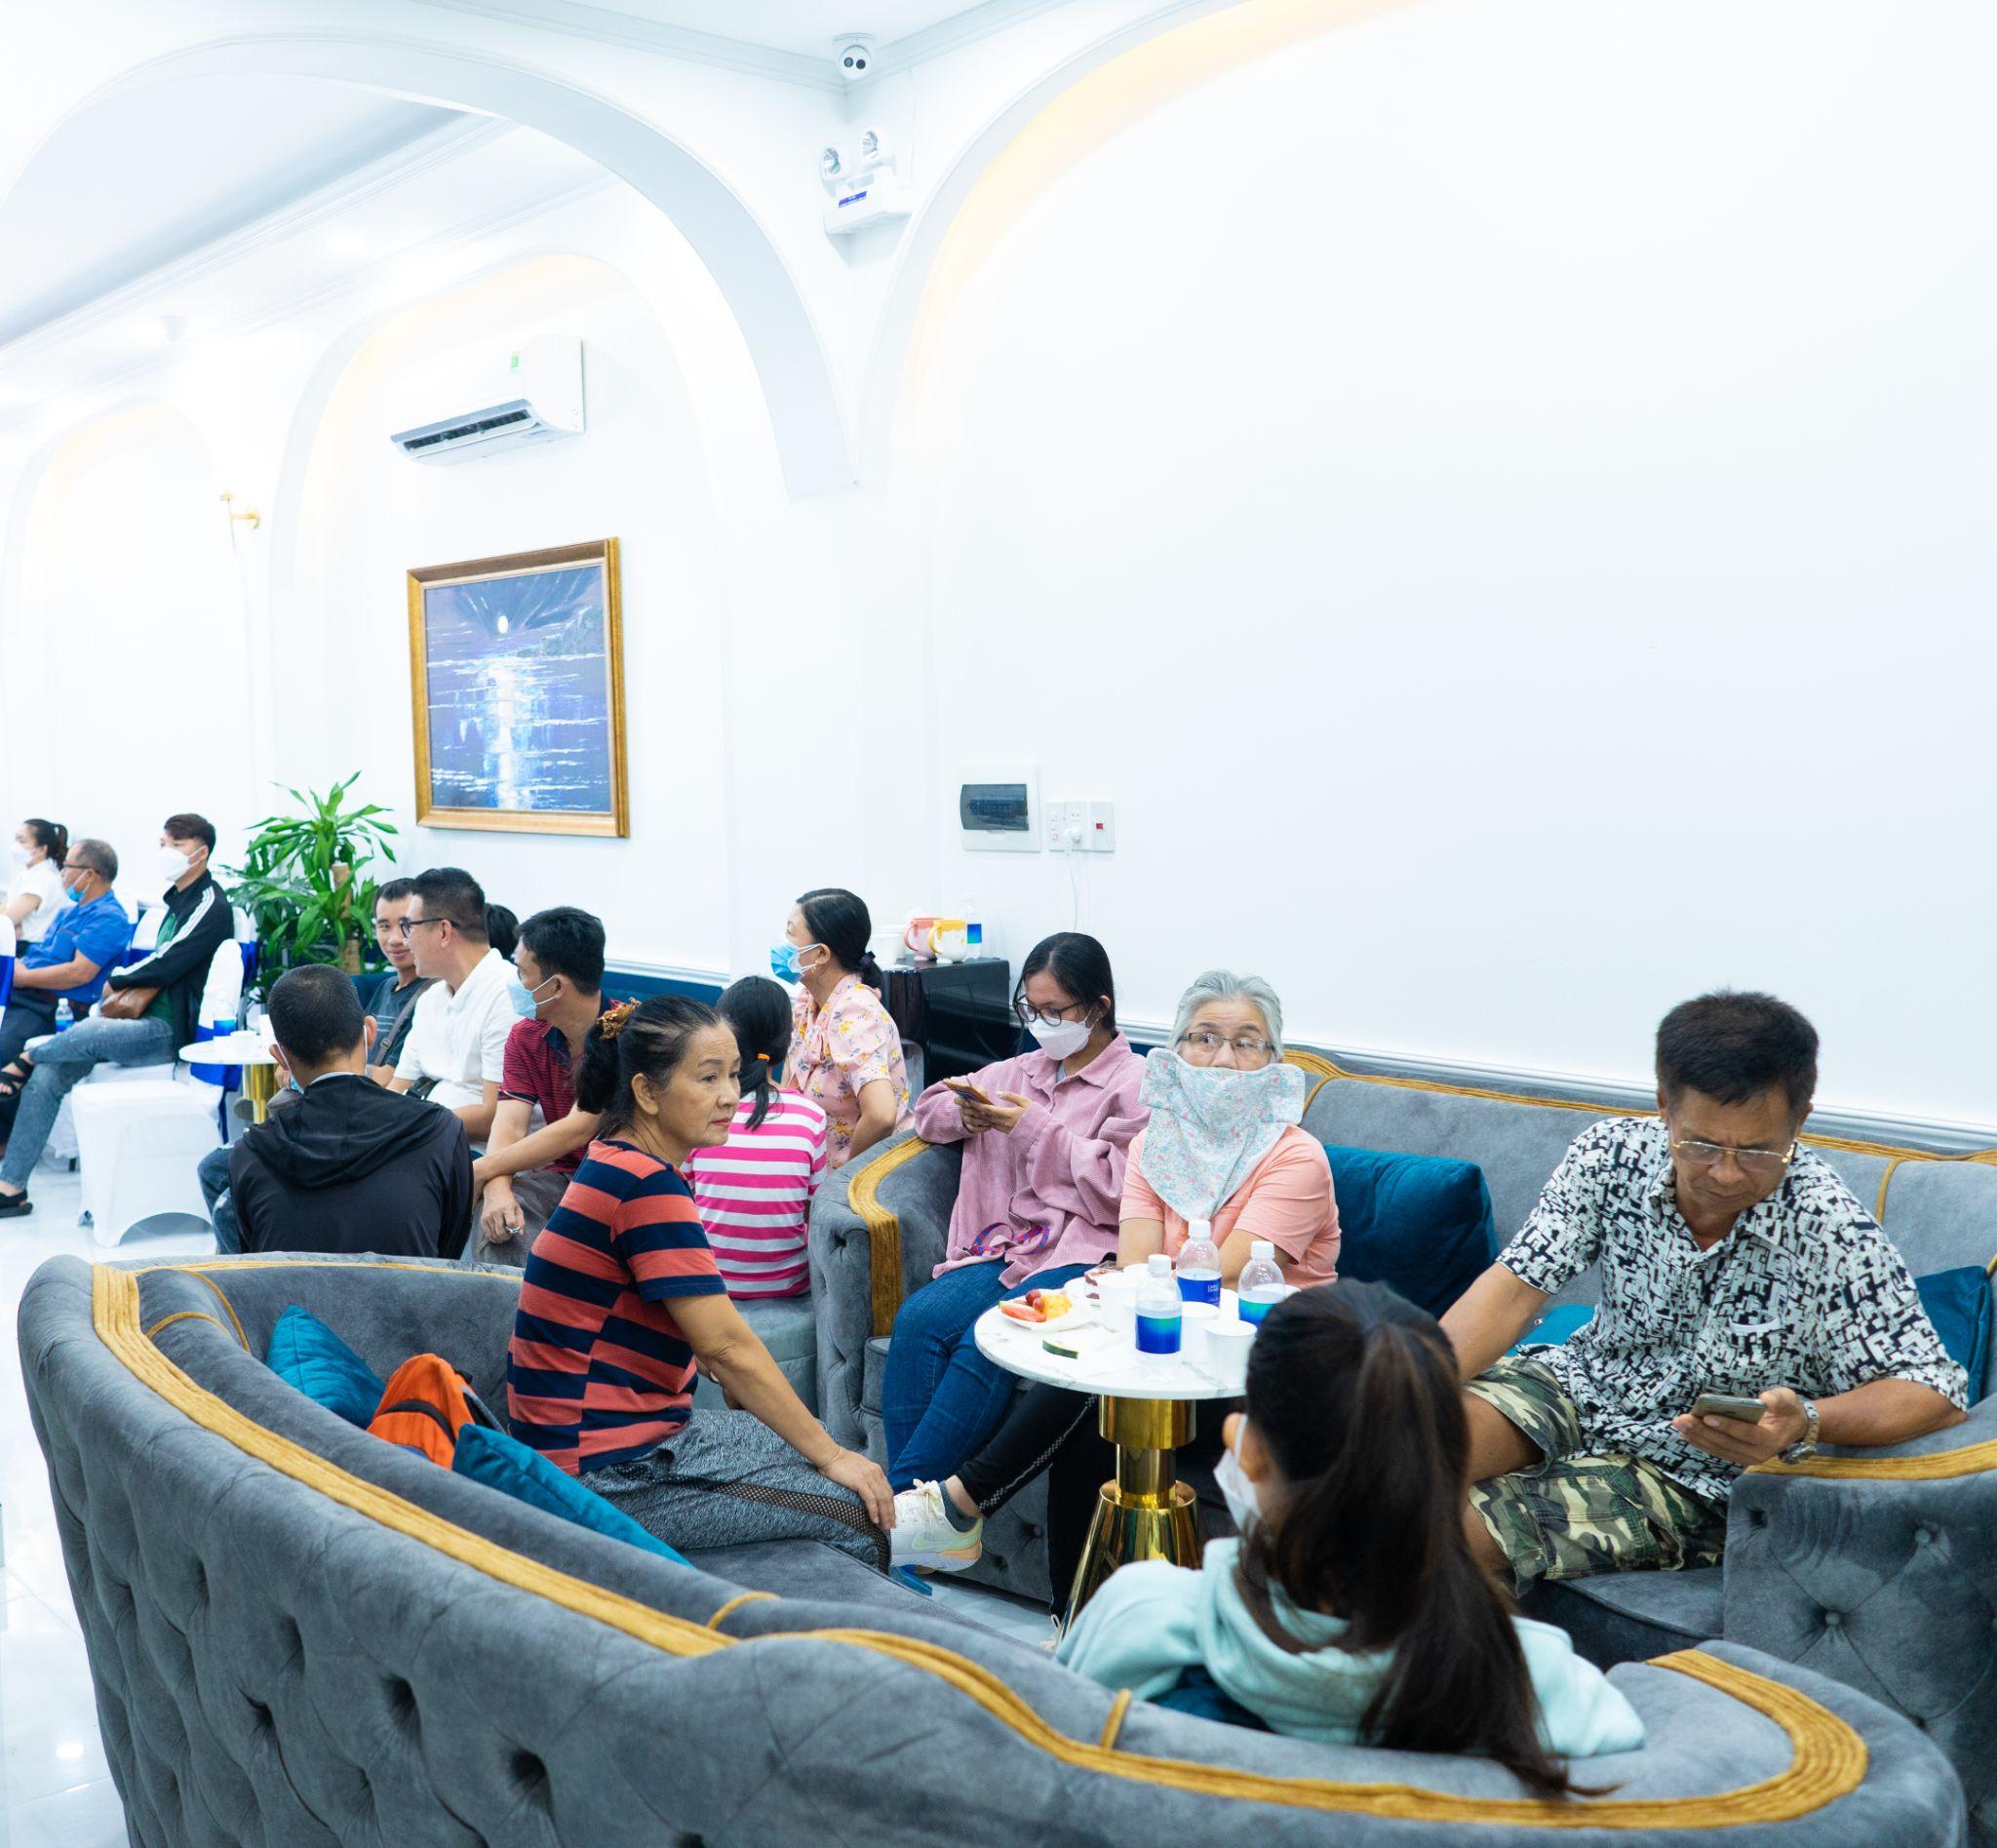 Hàng trăm khách hàng đã đến từ sớm để tham dự khai trương cũng như trải nghiệm dịch vụ cao cấp tại Nha khoa Quốc tế DAISY Nha Trang